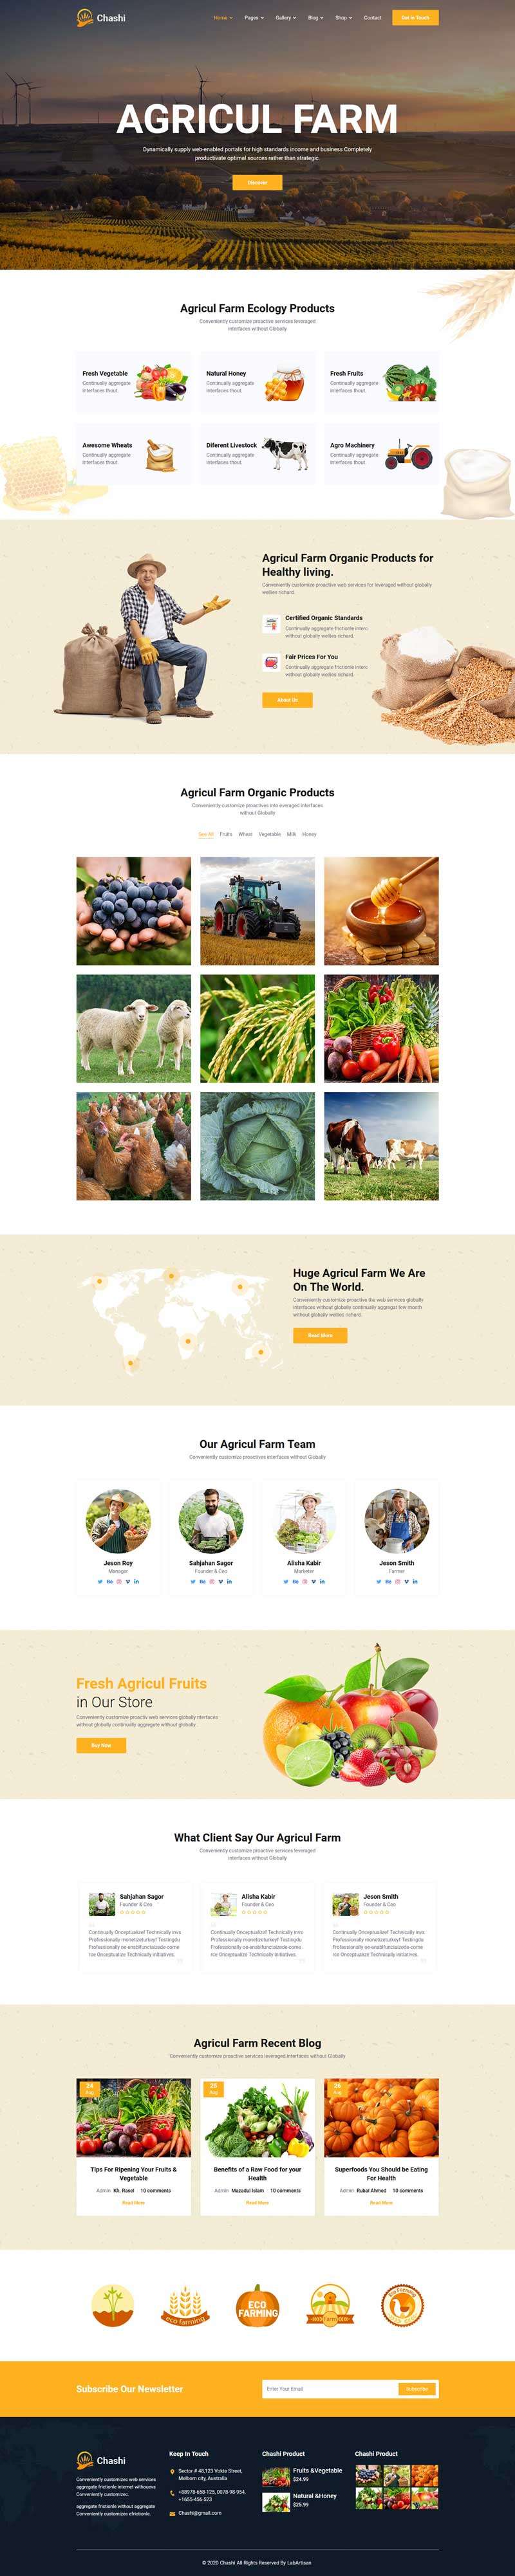 HTML5有機食品農業種植網站模板6554